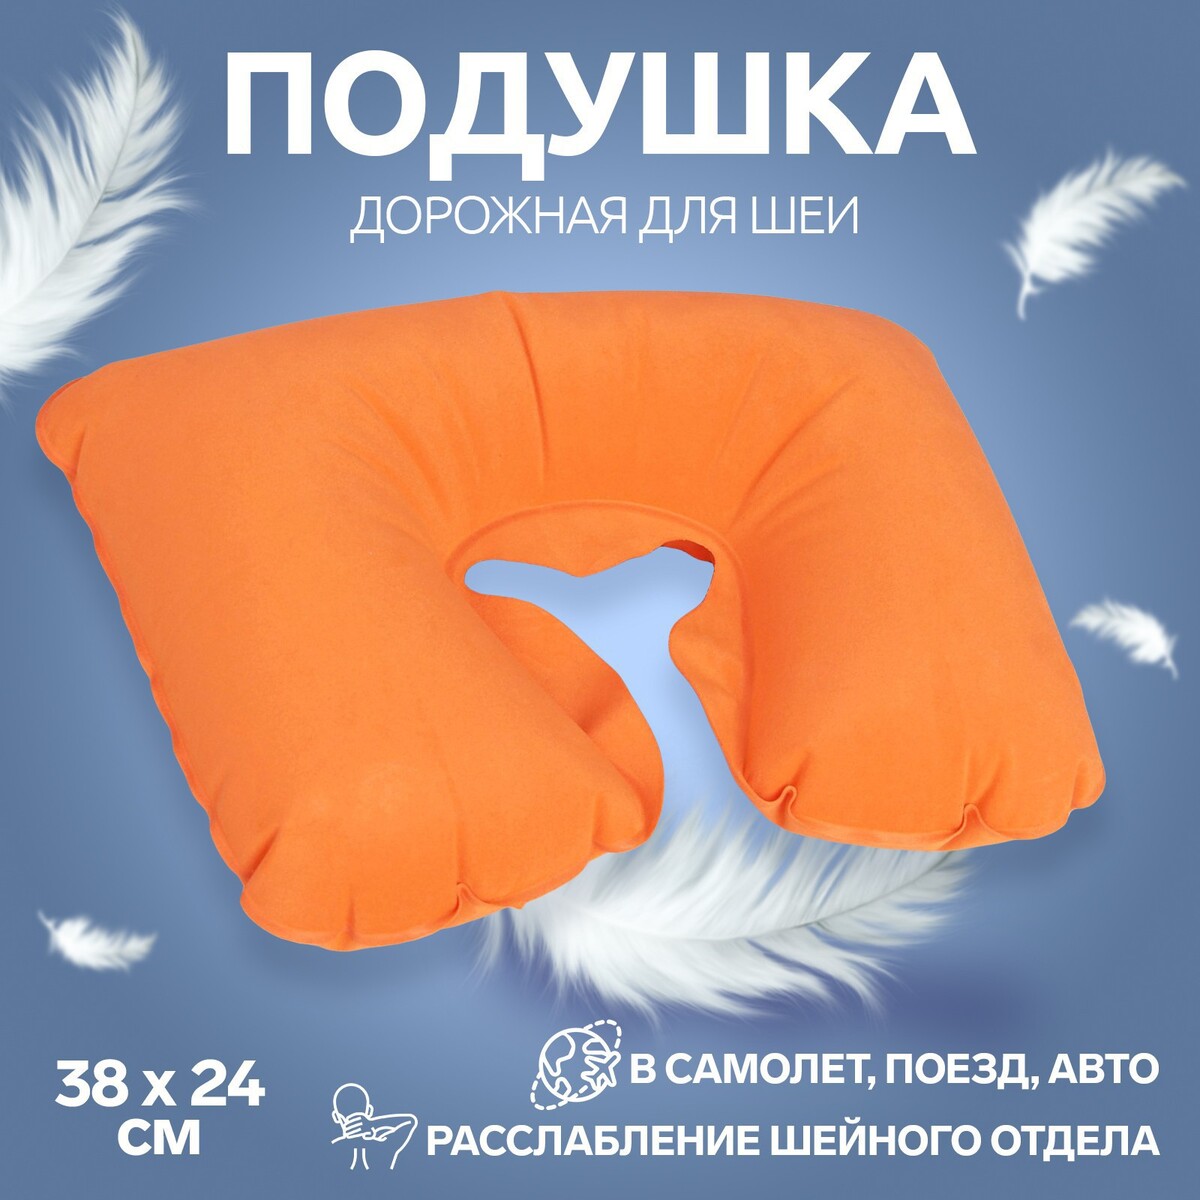 Подушка для шеи дорожная, надувная, 38 × 24 см, цвет оранжевый подушка дорожная надувная 46 × 30 см синий